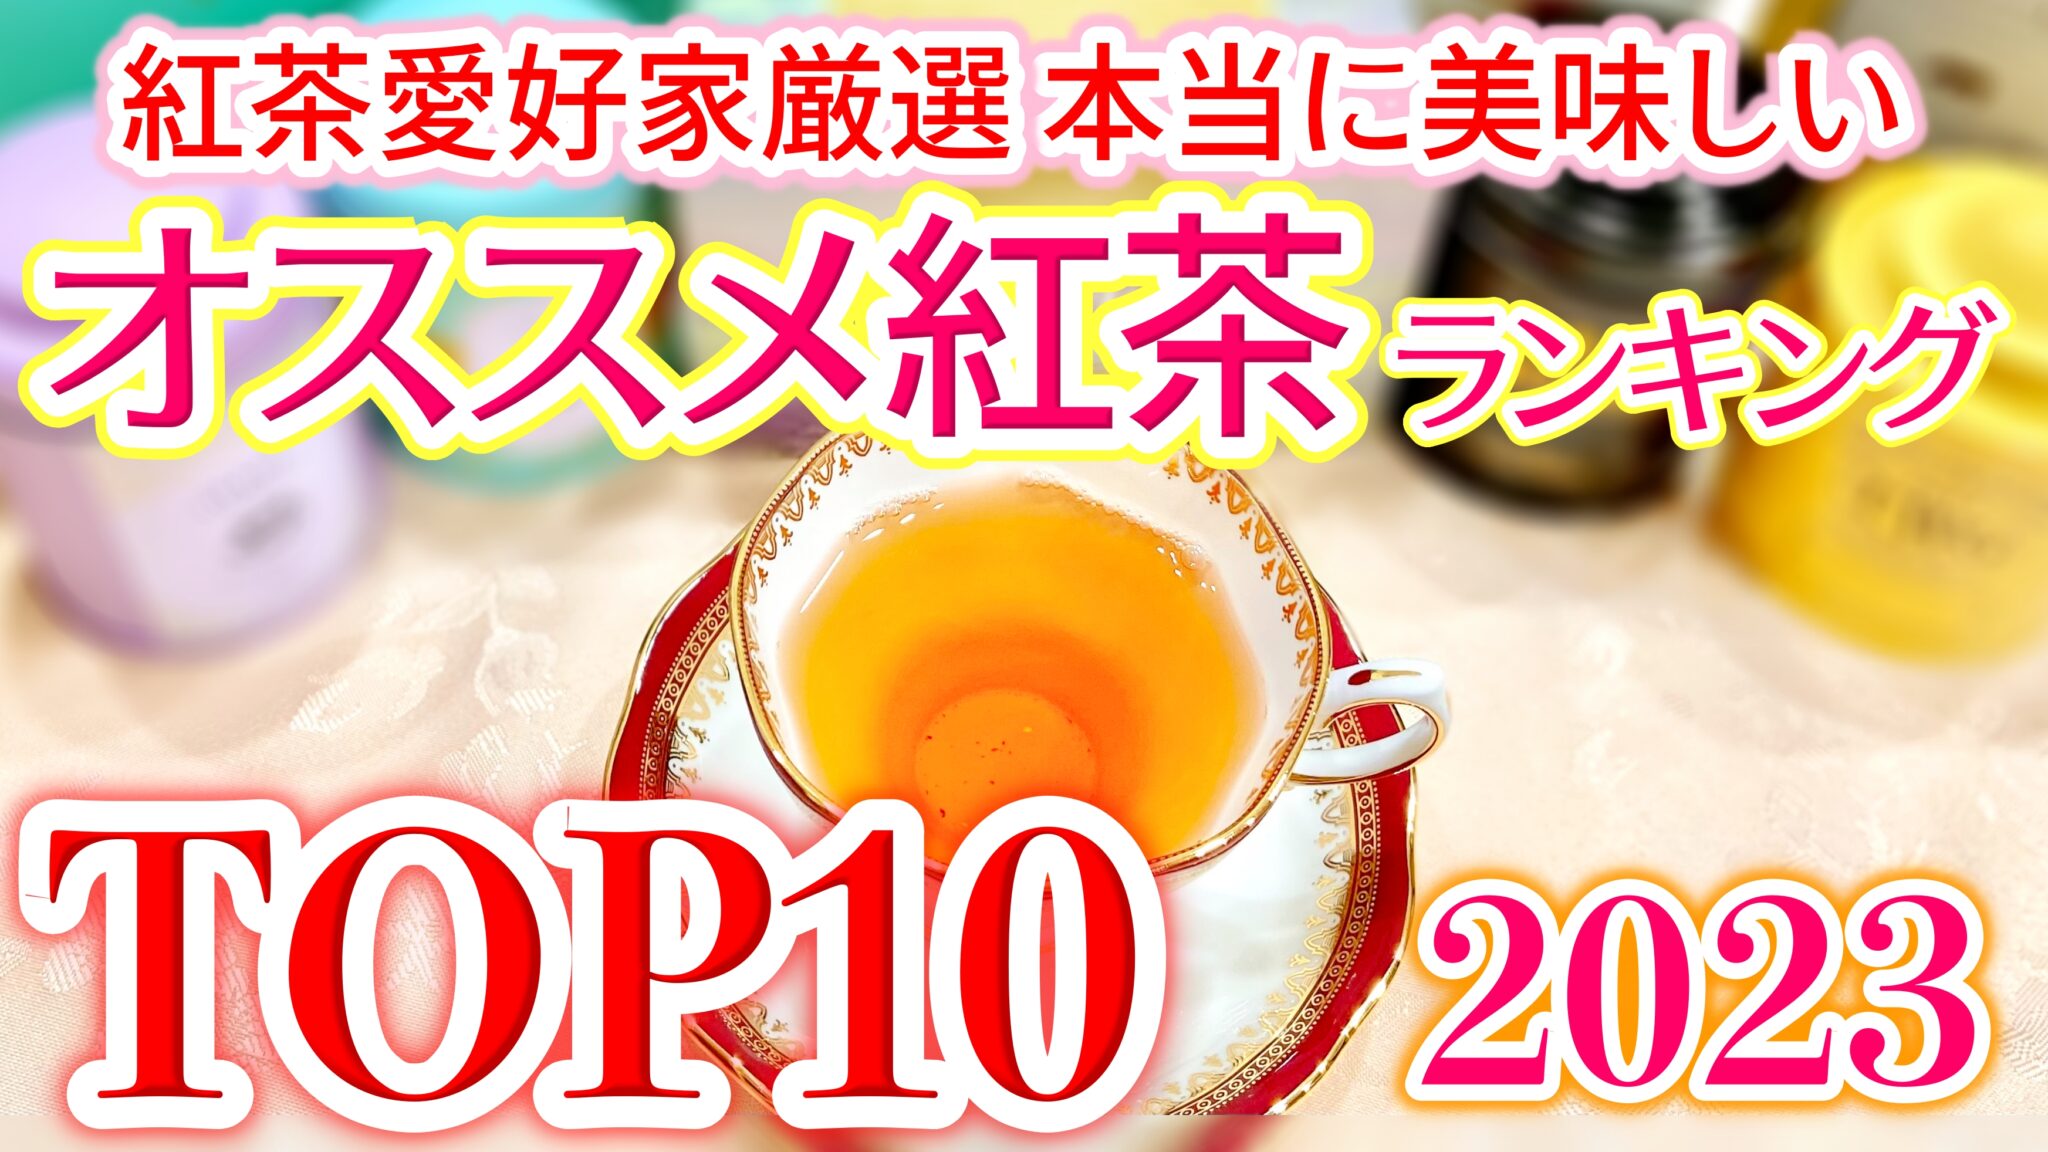 【2023年決定版】年間1000杯以上飲んできた紅茶愛好家が選ぶ、本当に美味しいおすすめ紅茶ランキングtop10 Miiのお茶会 〜紅茶専門ブログ〜